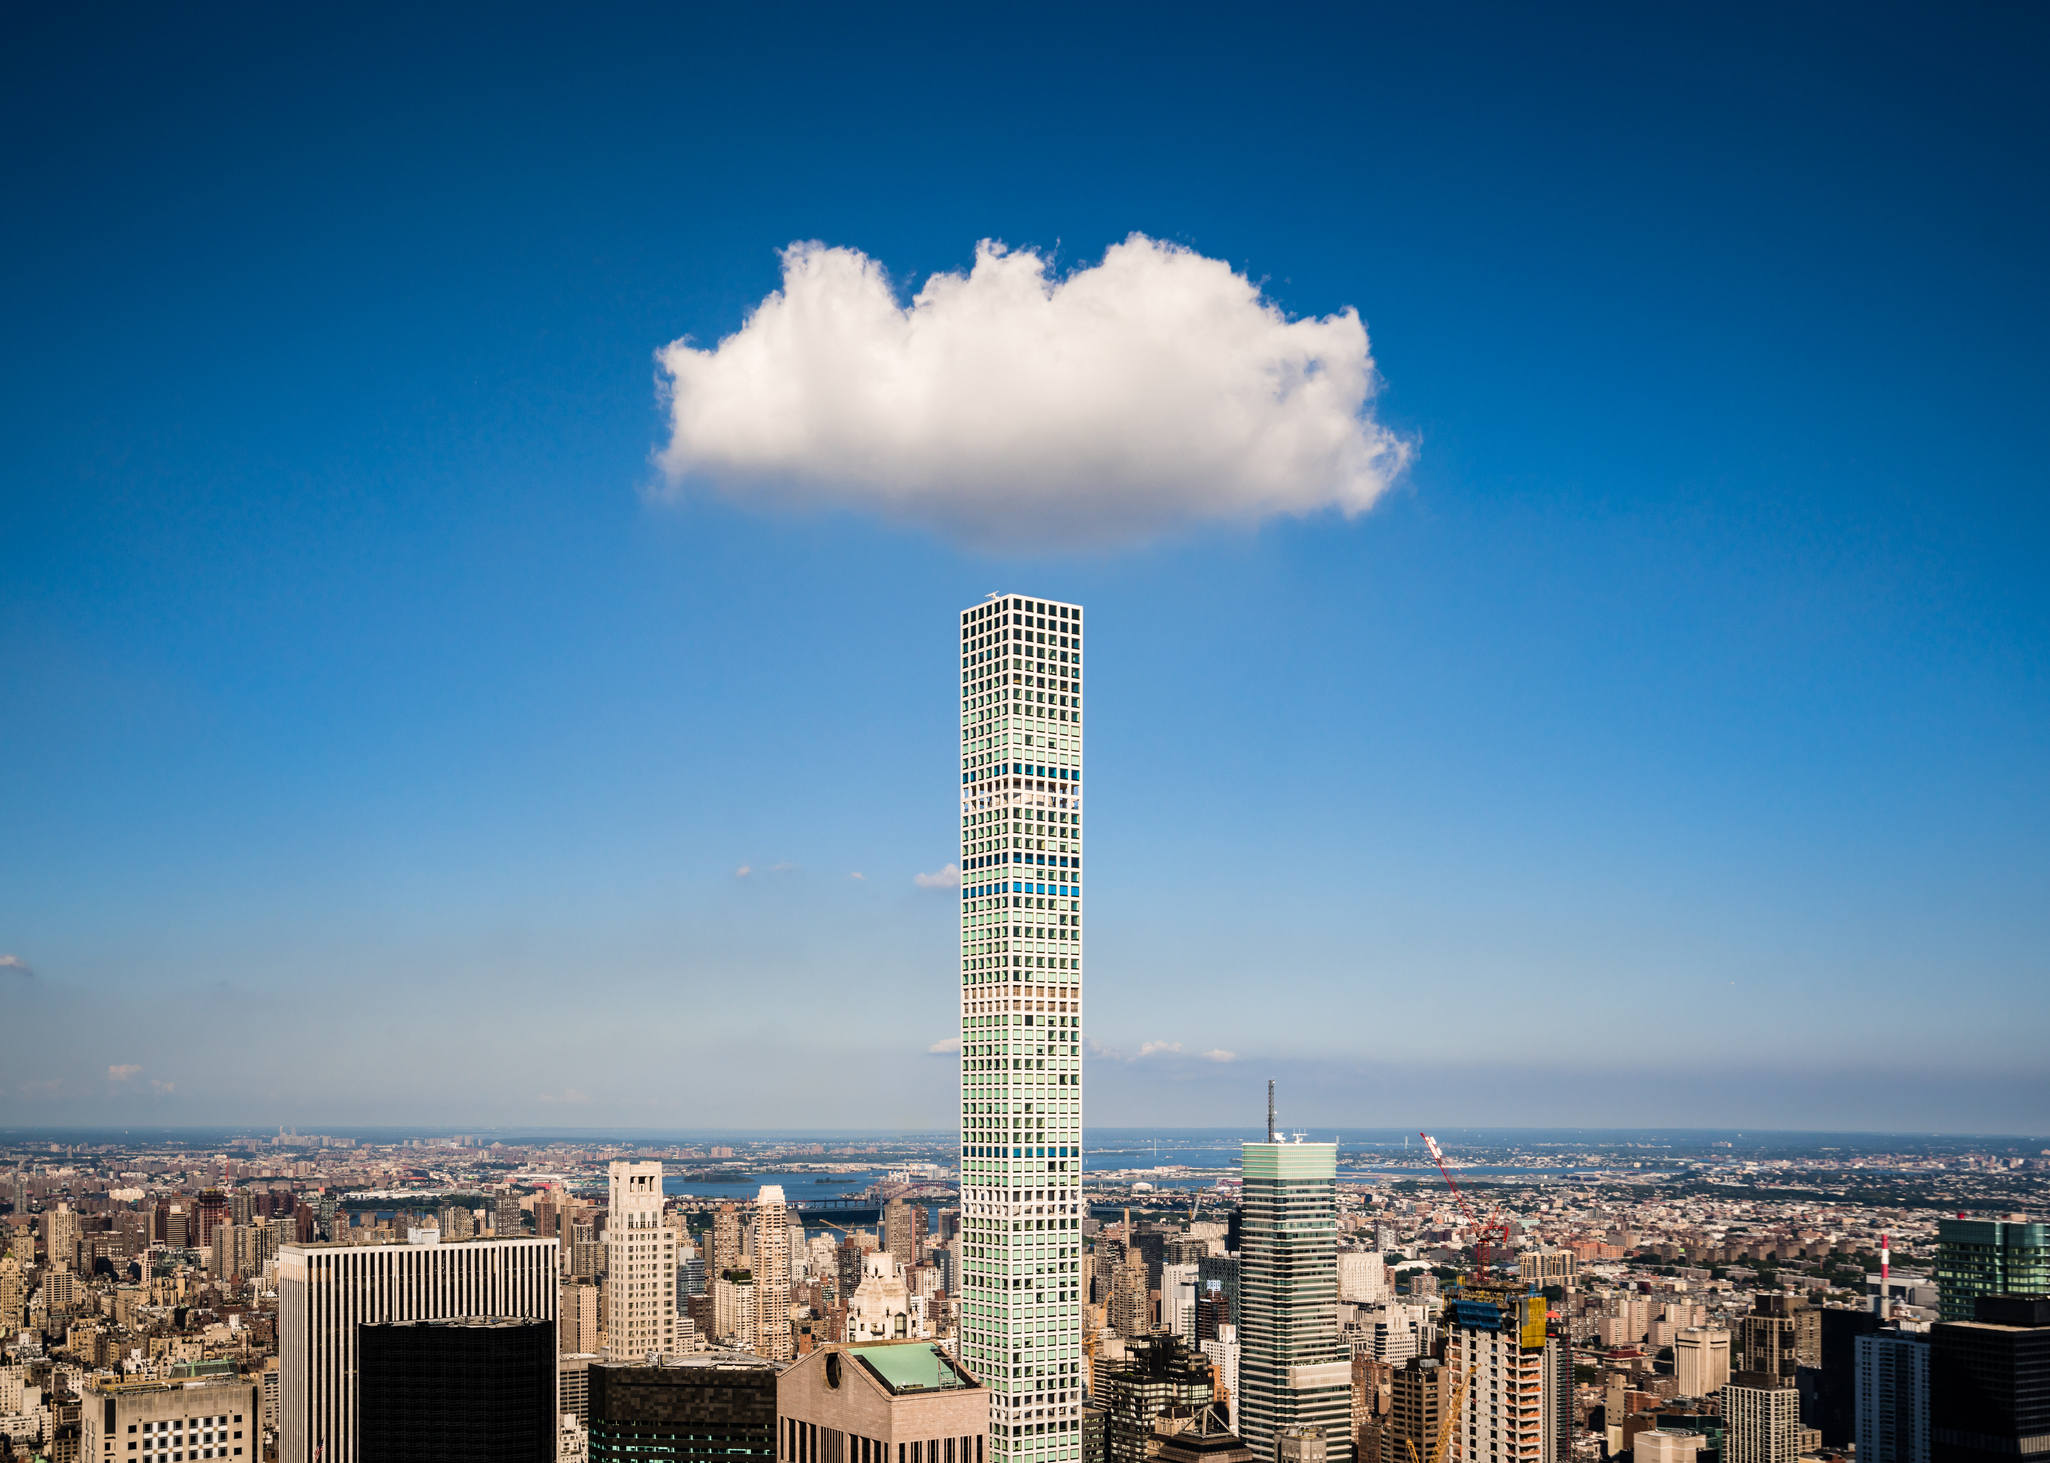 New York City'deki 432 Park Ave'nin üzerinde bir bulut asılı duruyor.